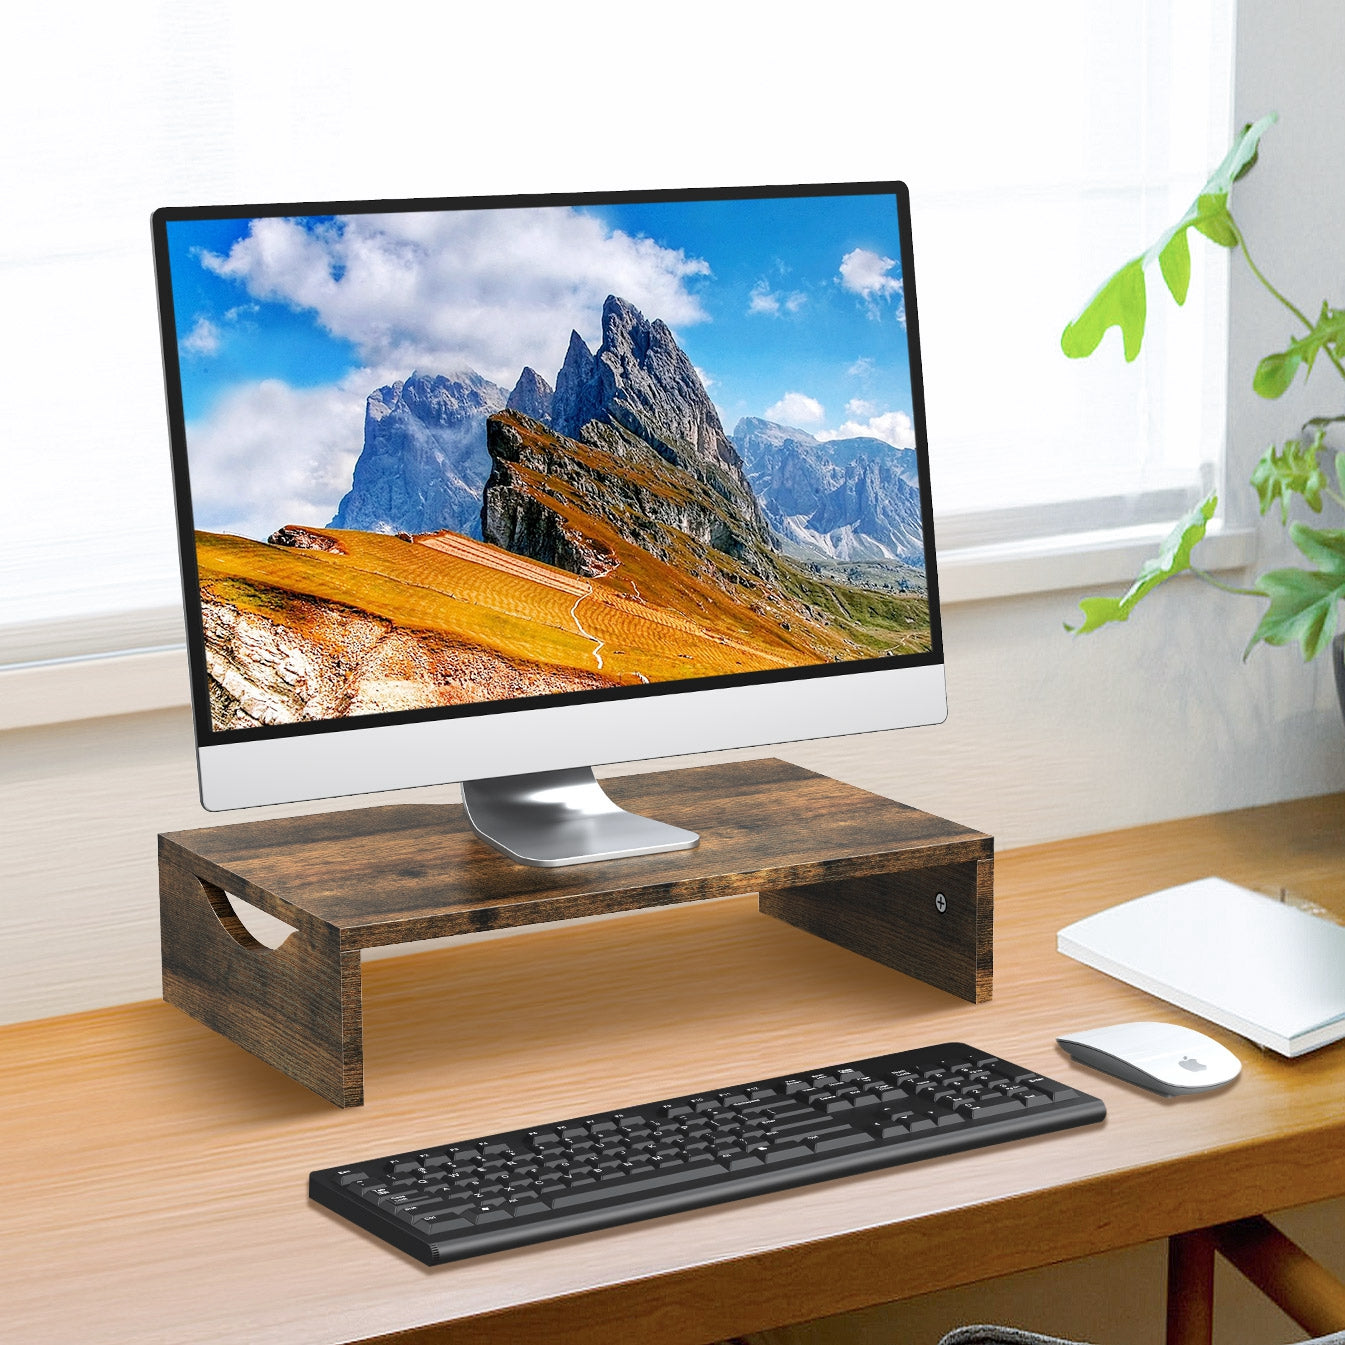 Wood Monitor Riser for Desk